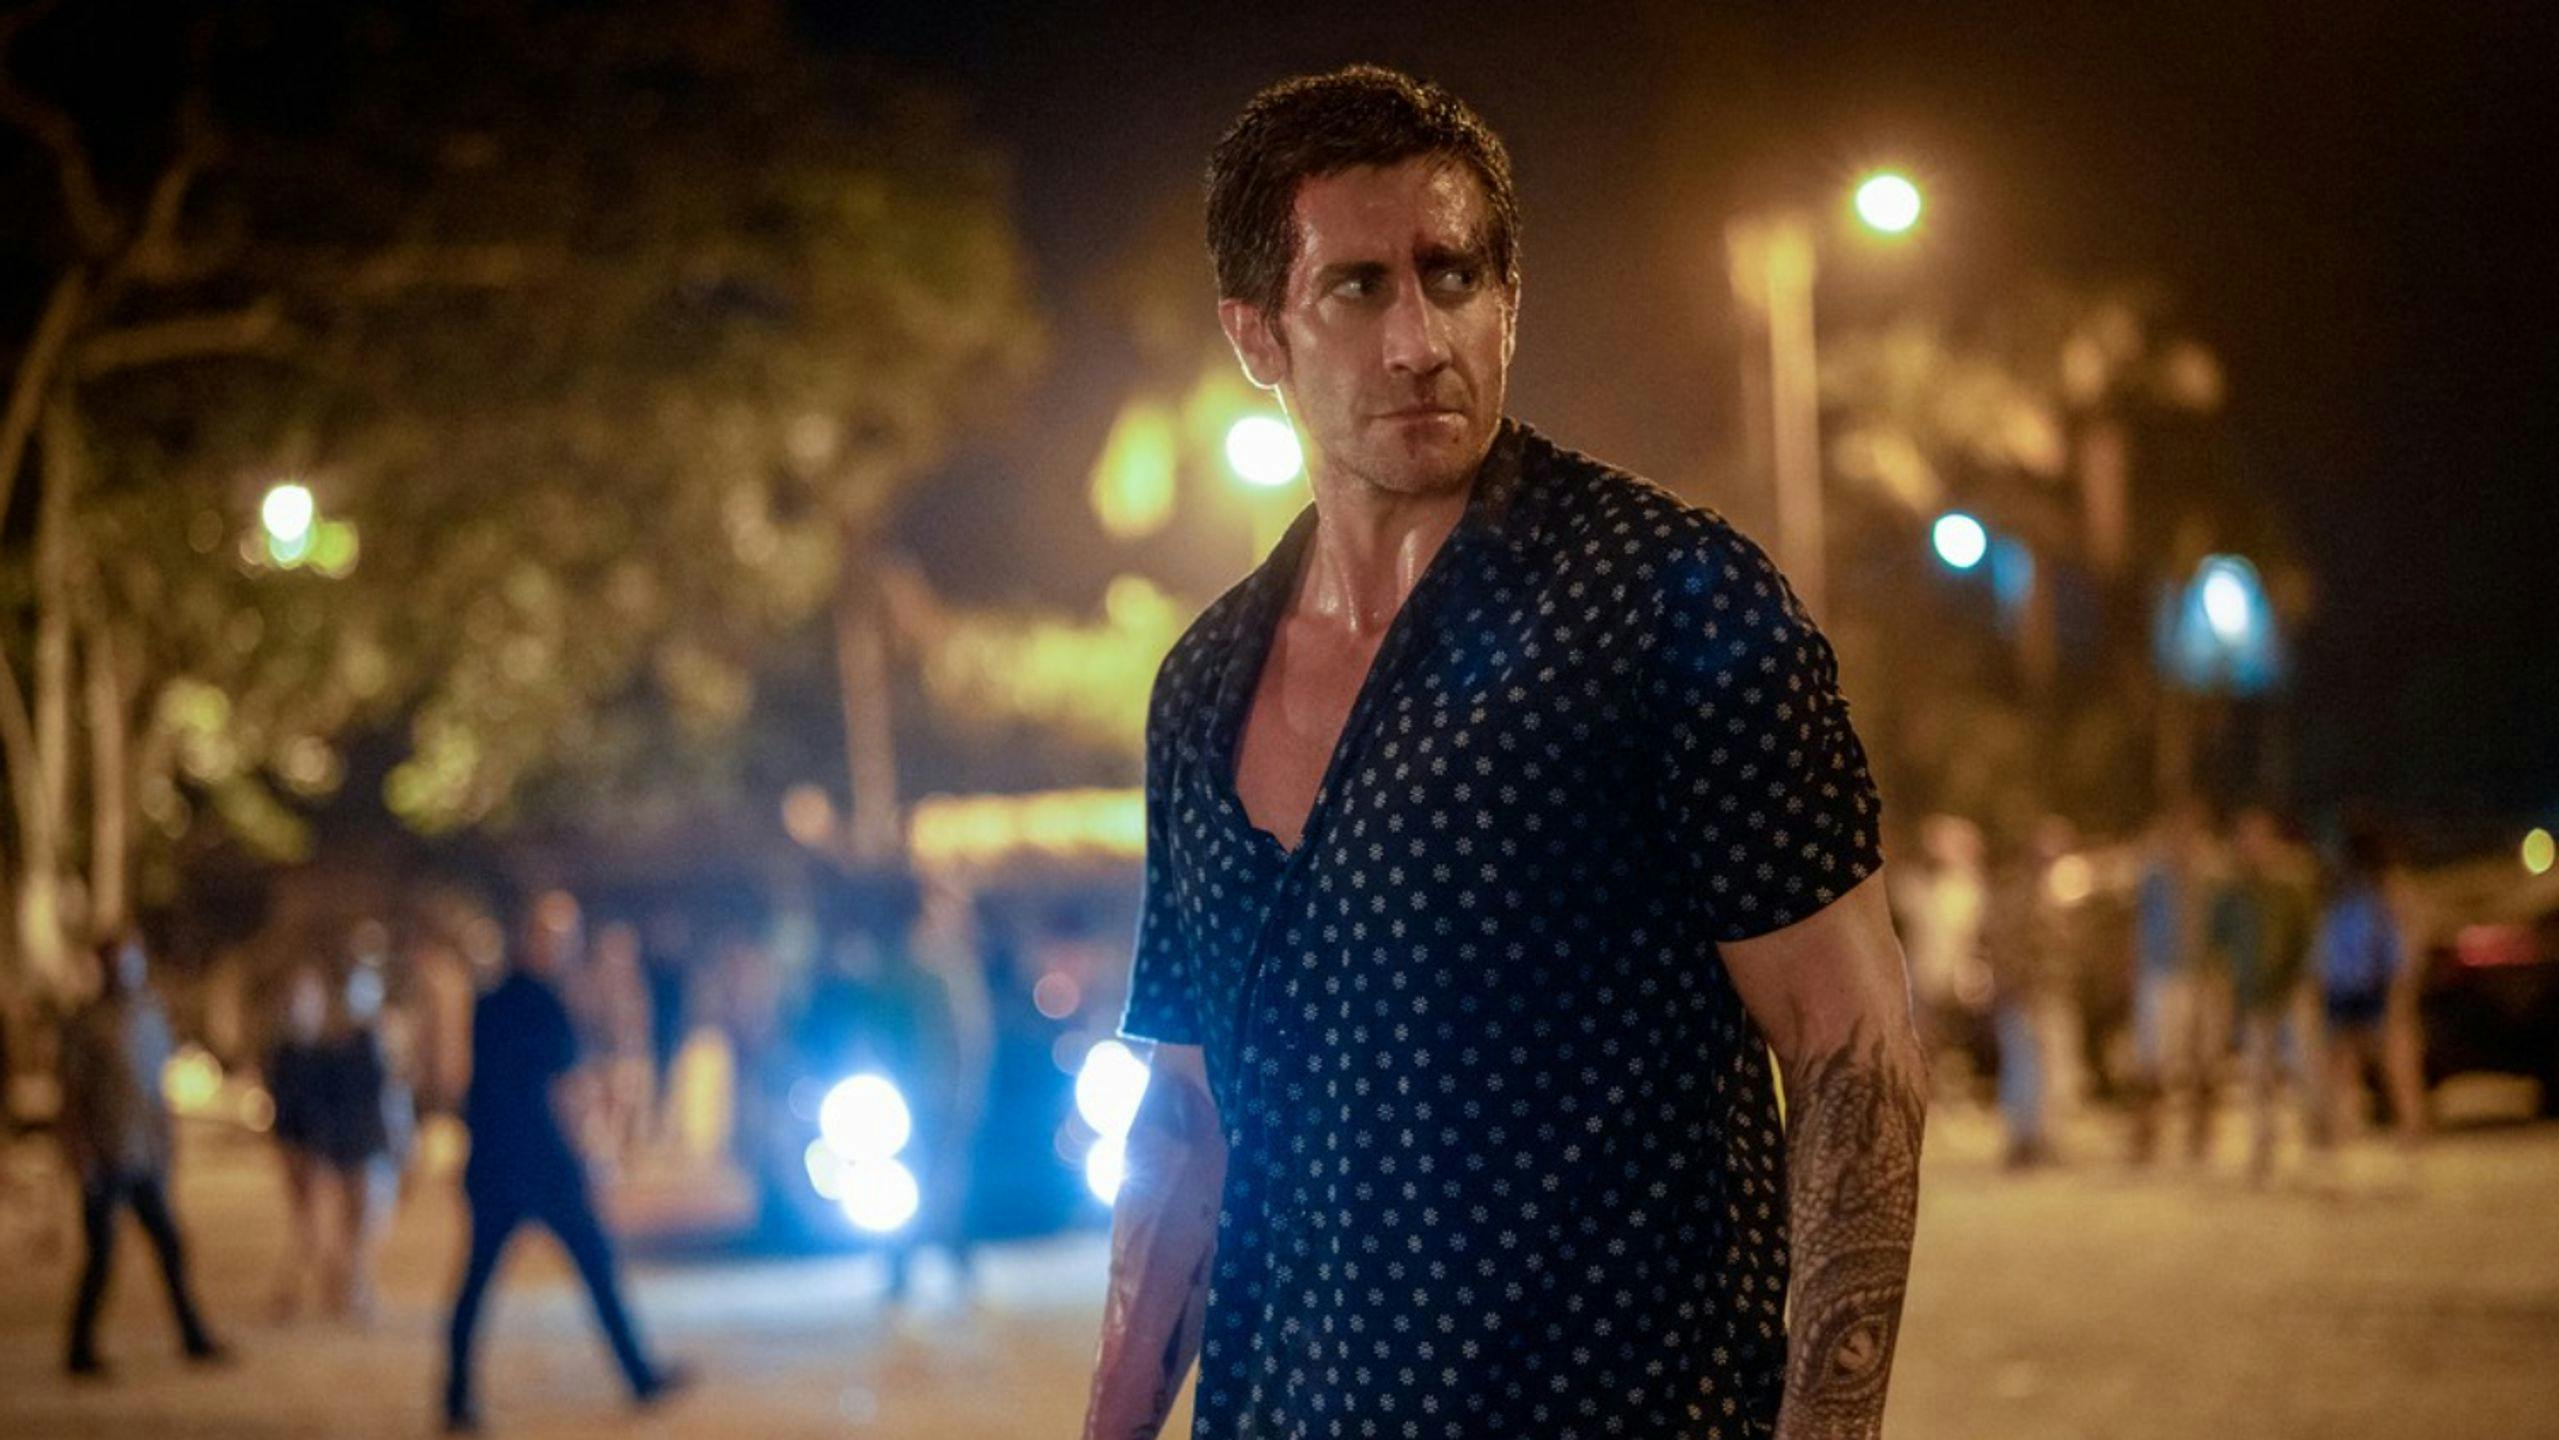 Fotografía promocional de la película de Amazon Studios ‘De profesión: duro', protagonizada por Jake Gyllenhaal